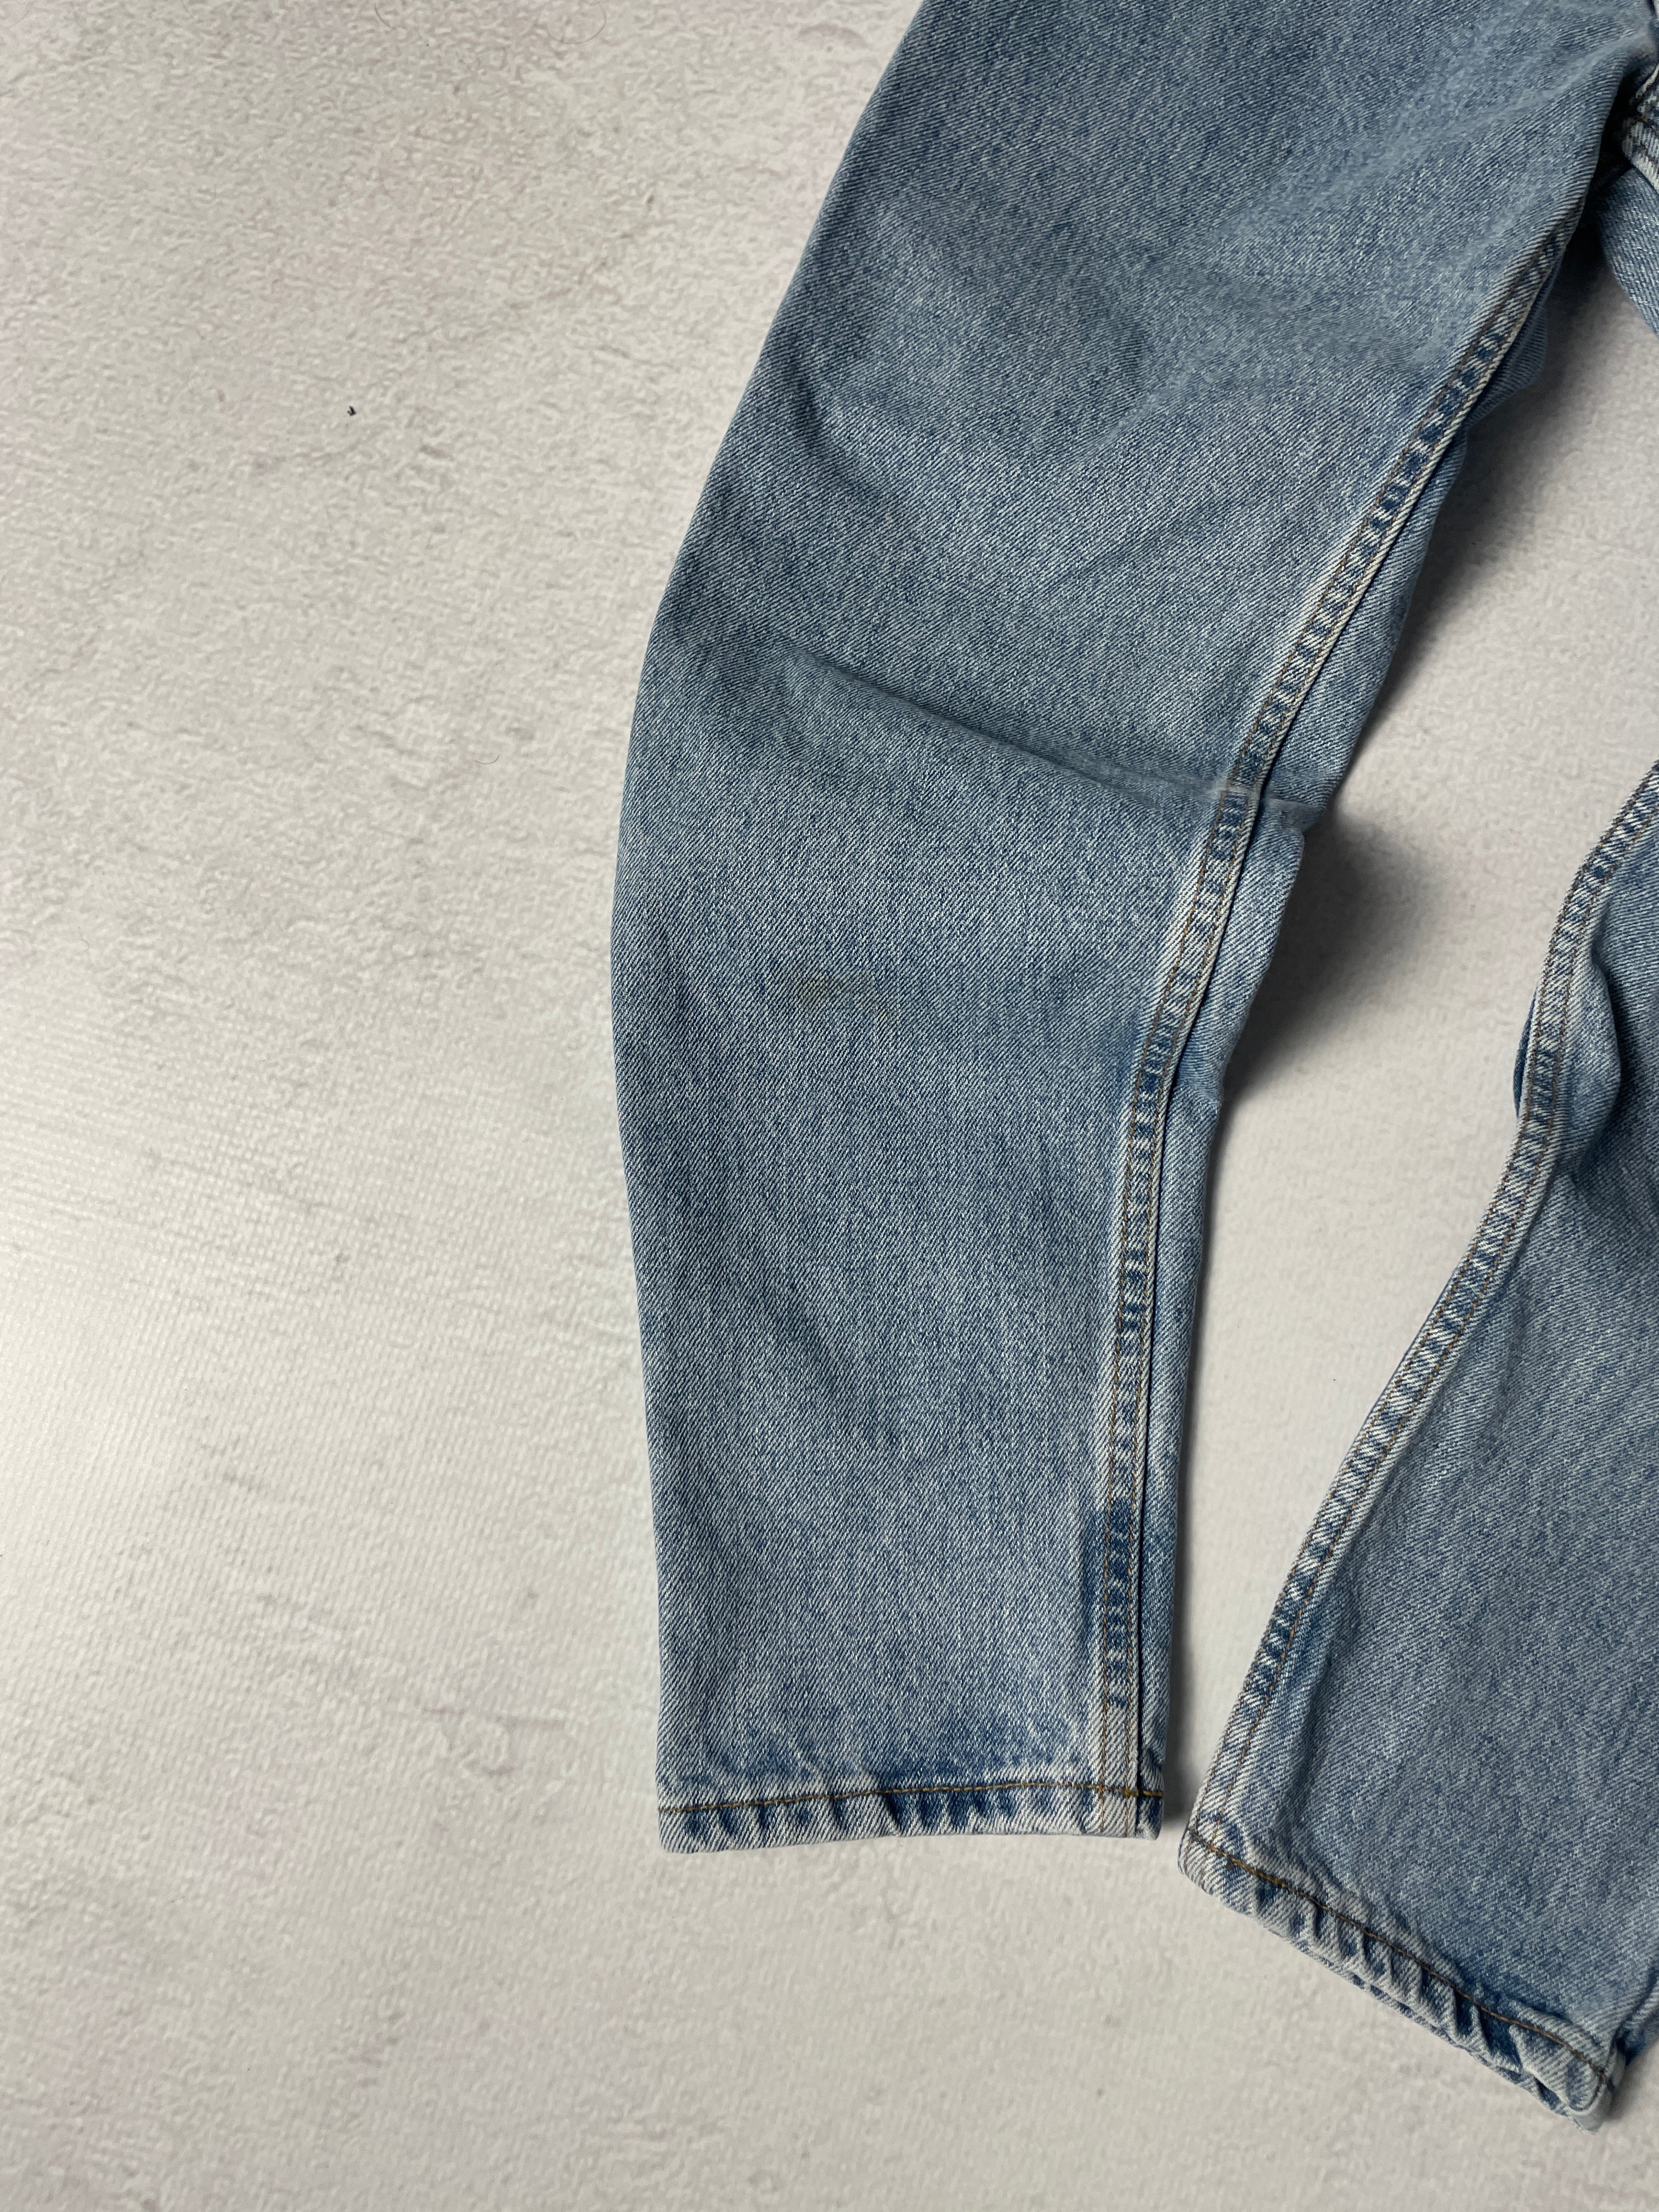 Vintage Levis 521 Jeans - Women's 28Wx29L